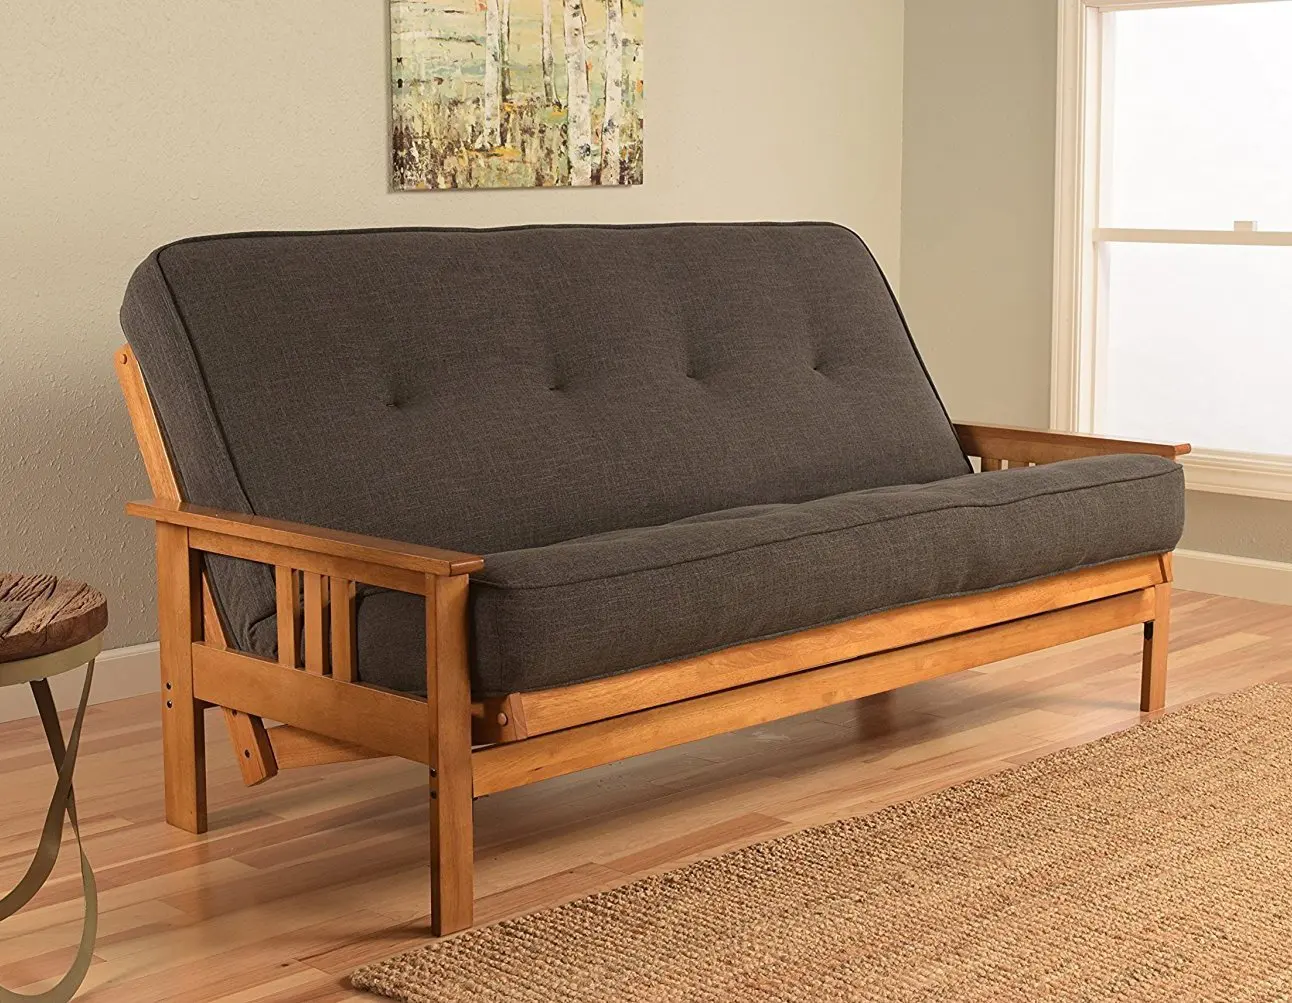 Деревянный диван